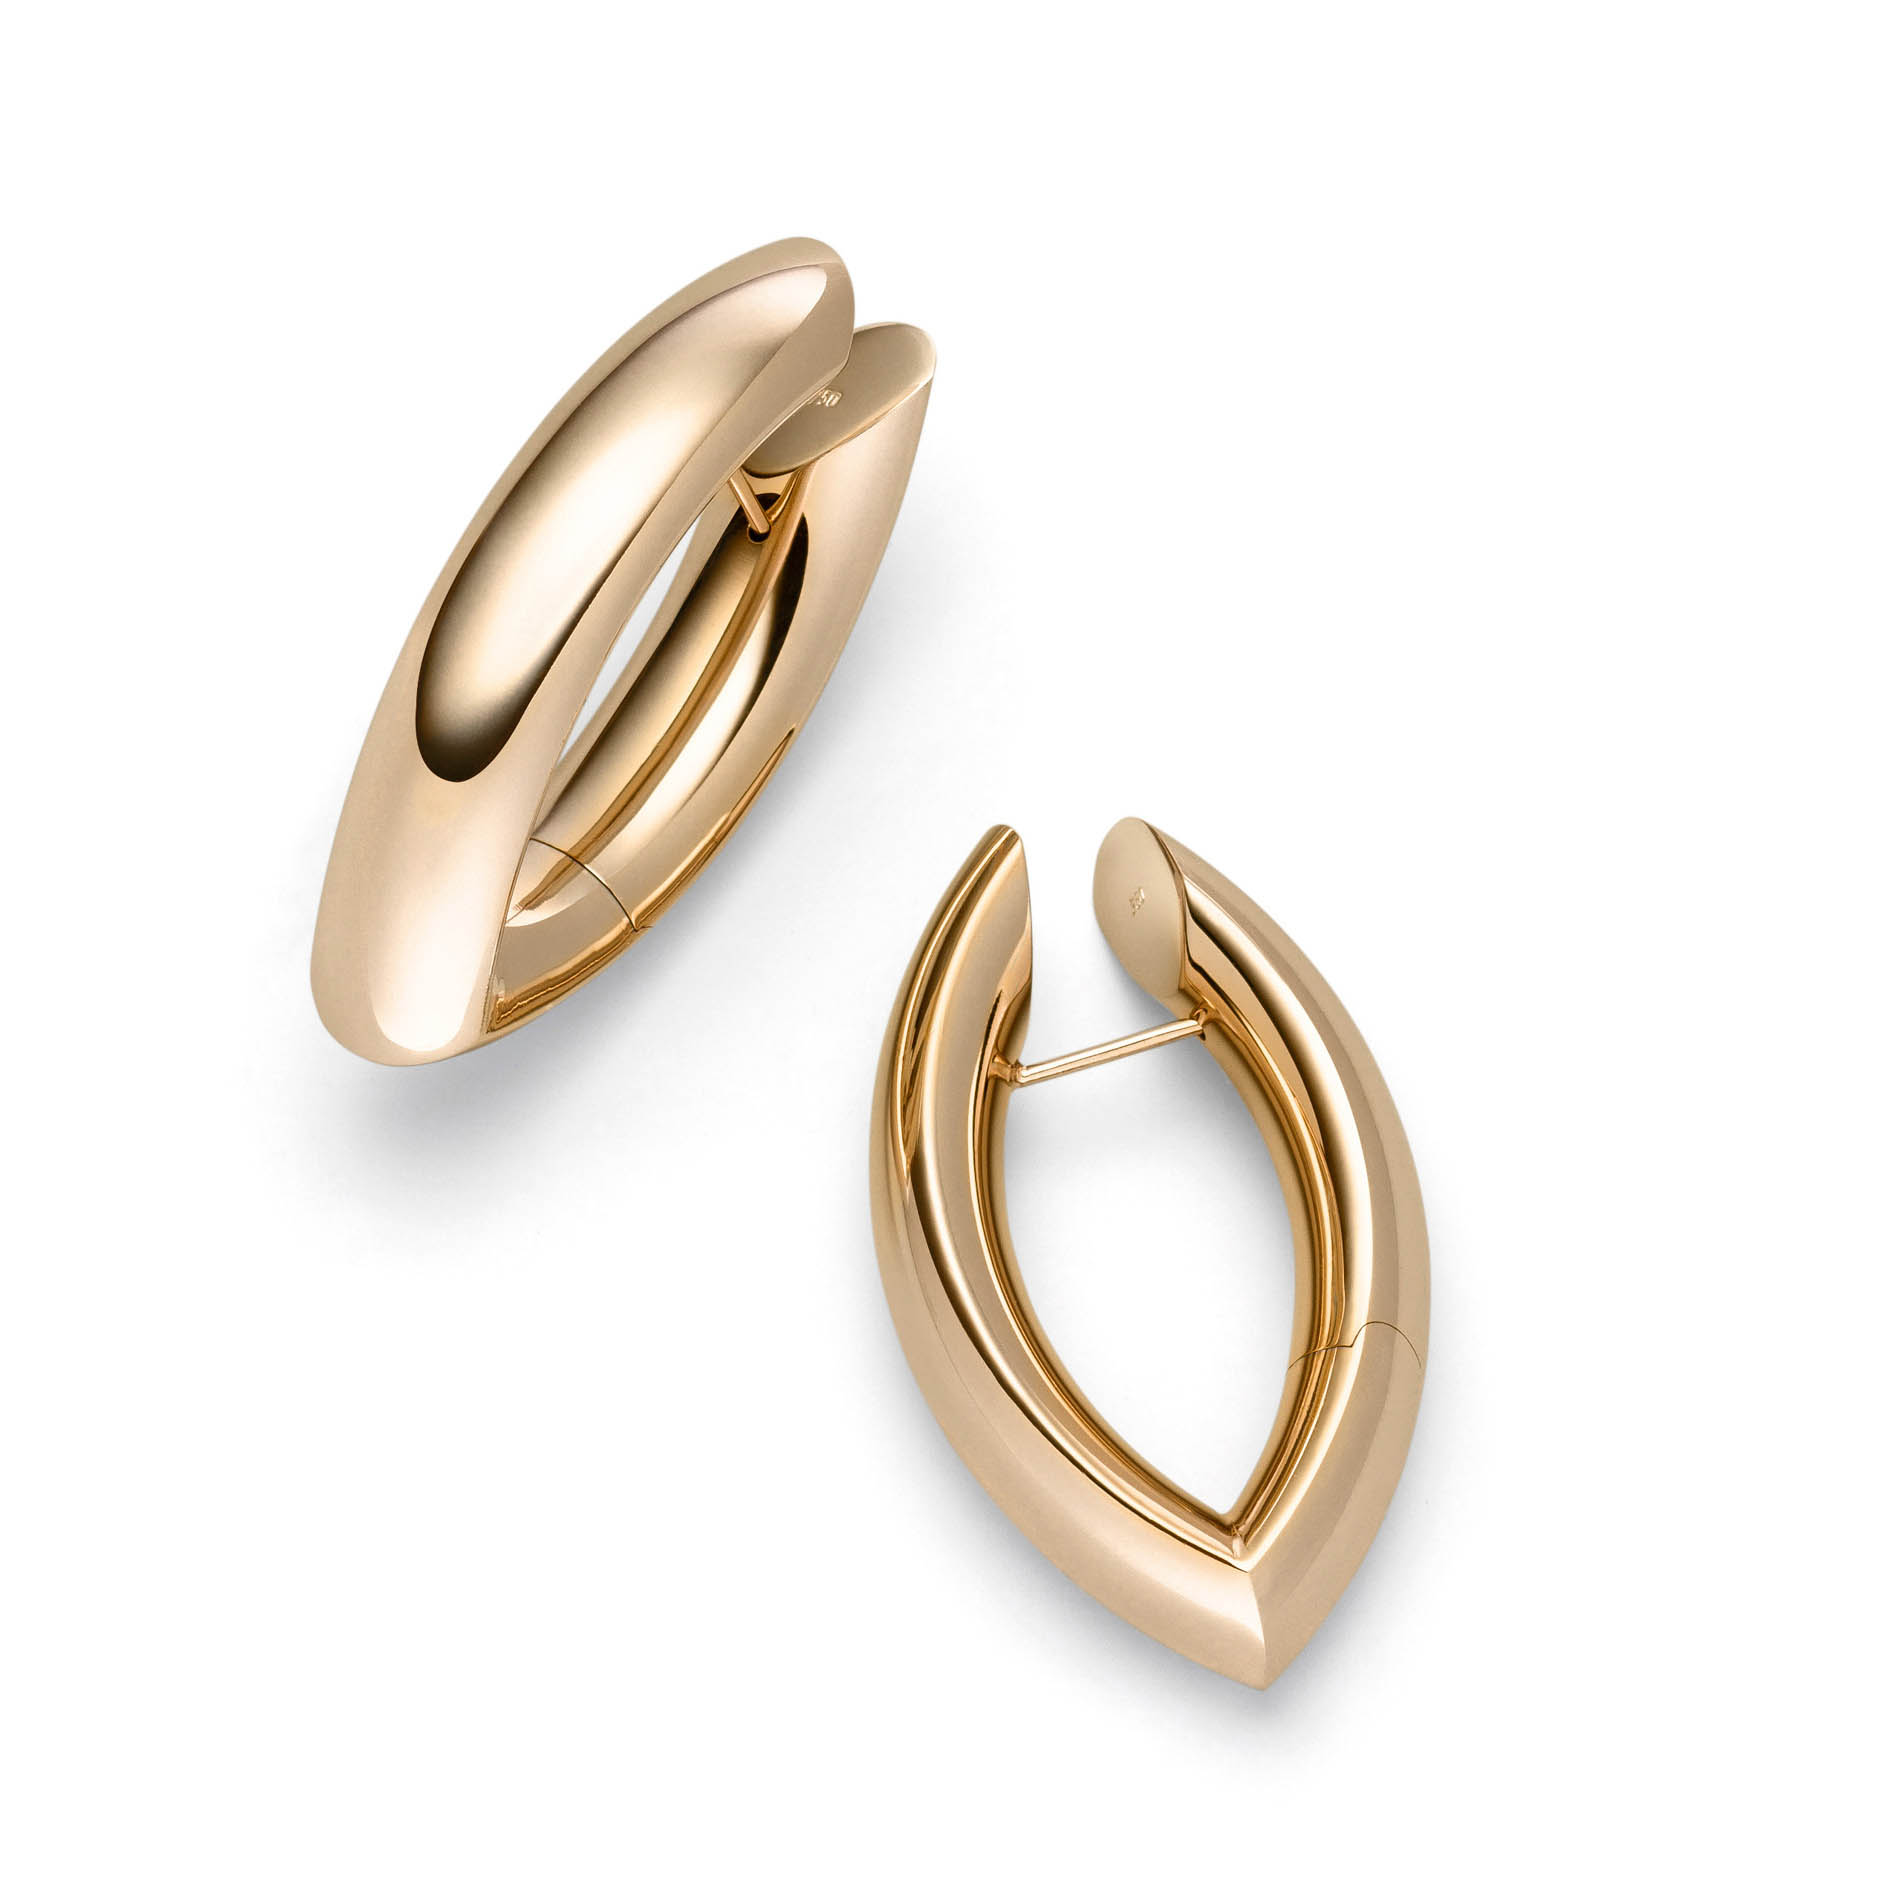 Wholesale Custom design 925 OEM/ODM Jewelry silver earrings suppliers OEM ODM jewelry factory